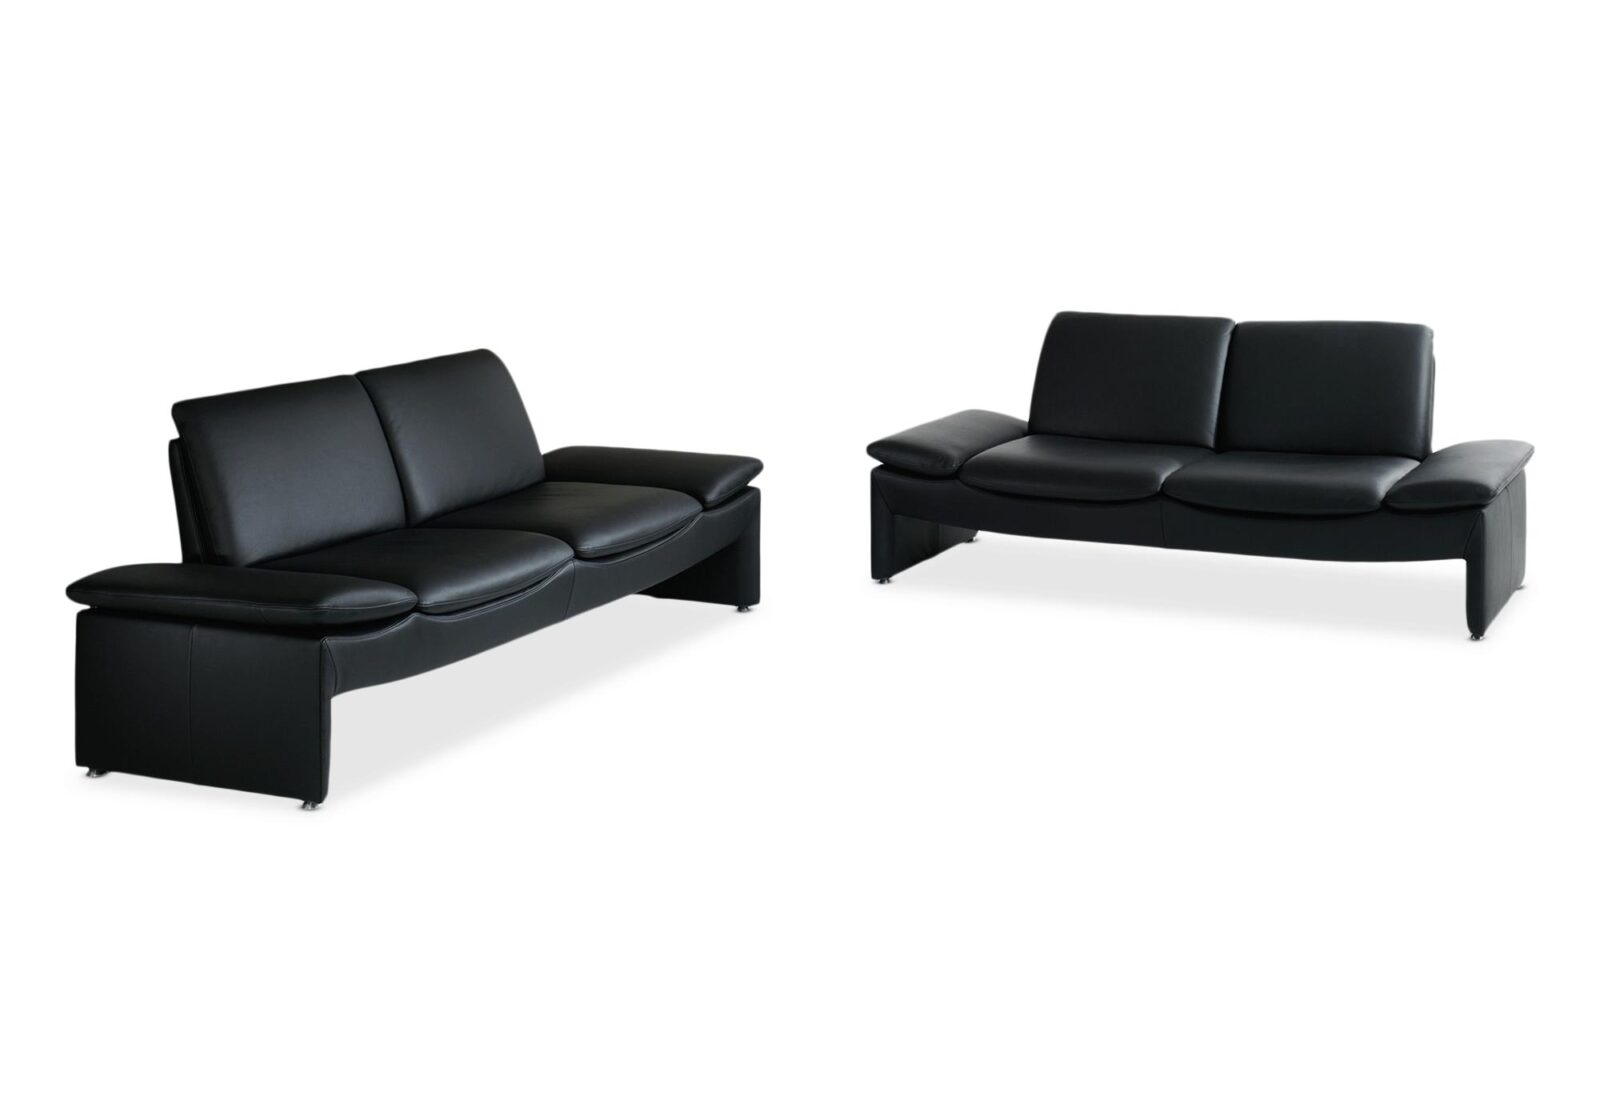 Polstergruppe Baccara mit 3er und 2.5er Sofa. Bezug: Leder. Farbe: Schwarz. Erhältlich bei Möbel Gallati.